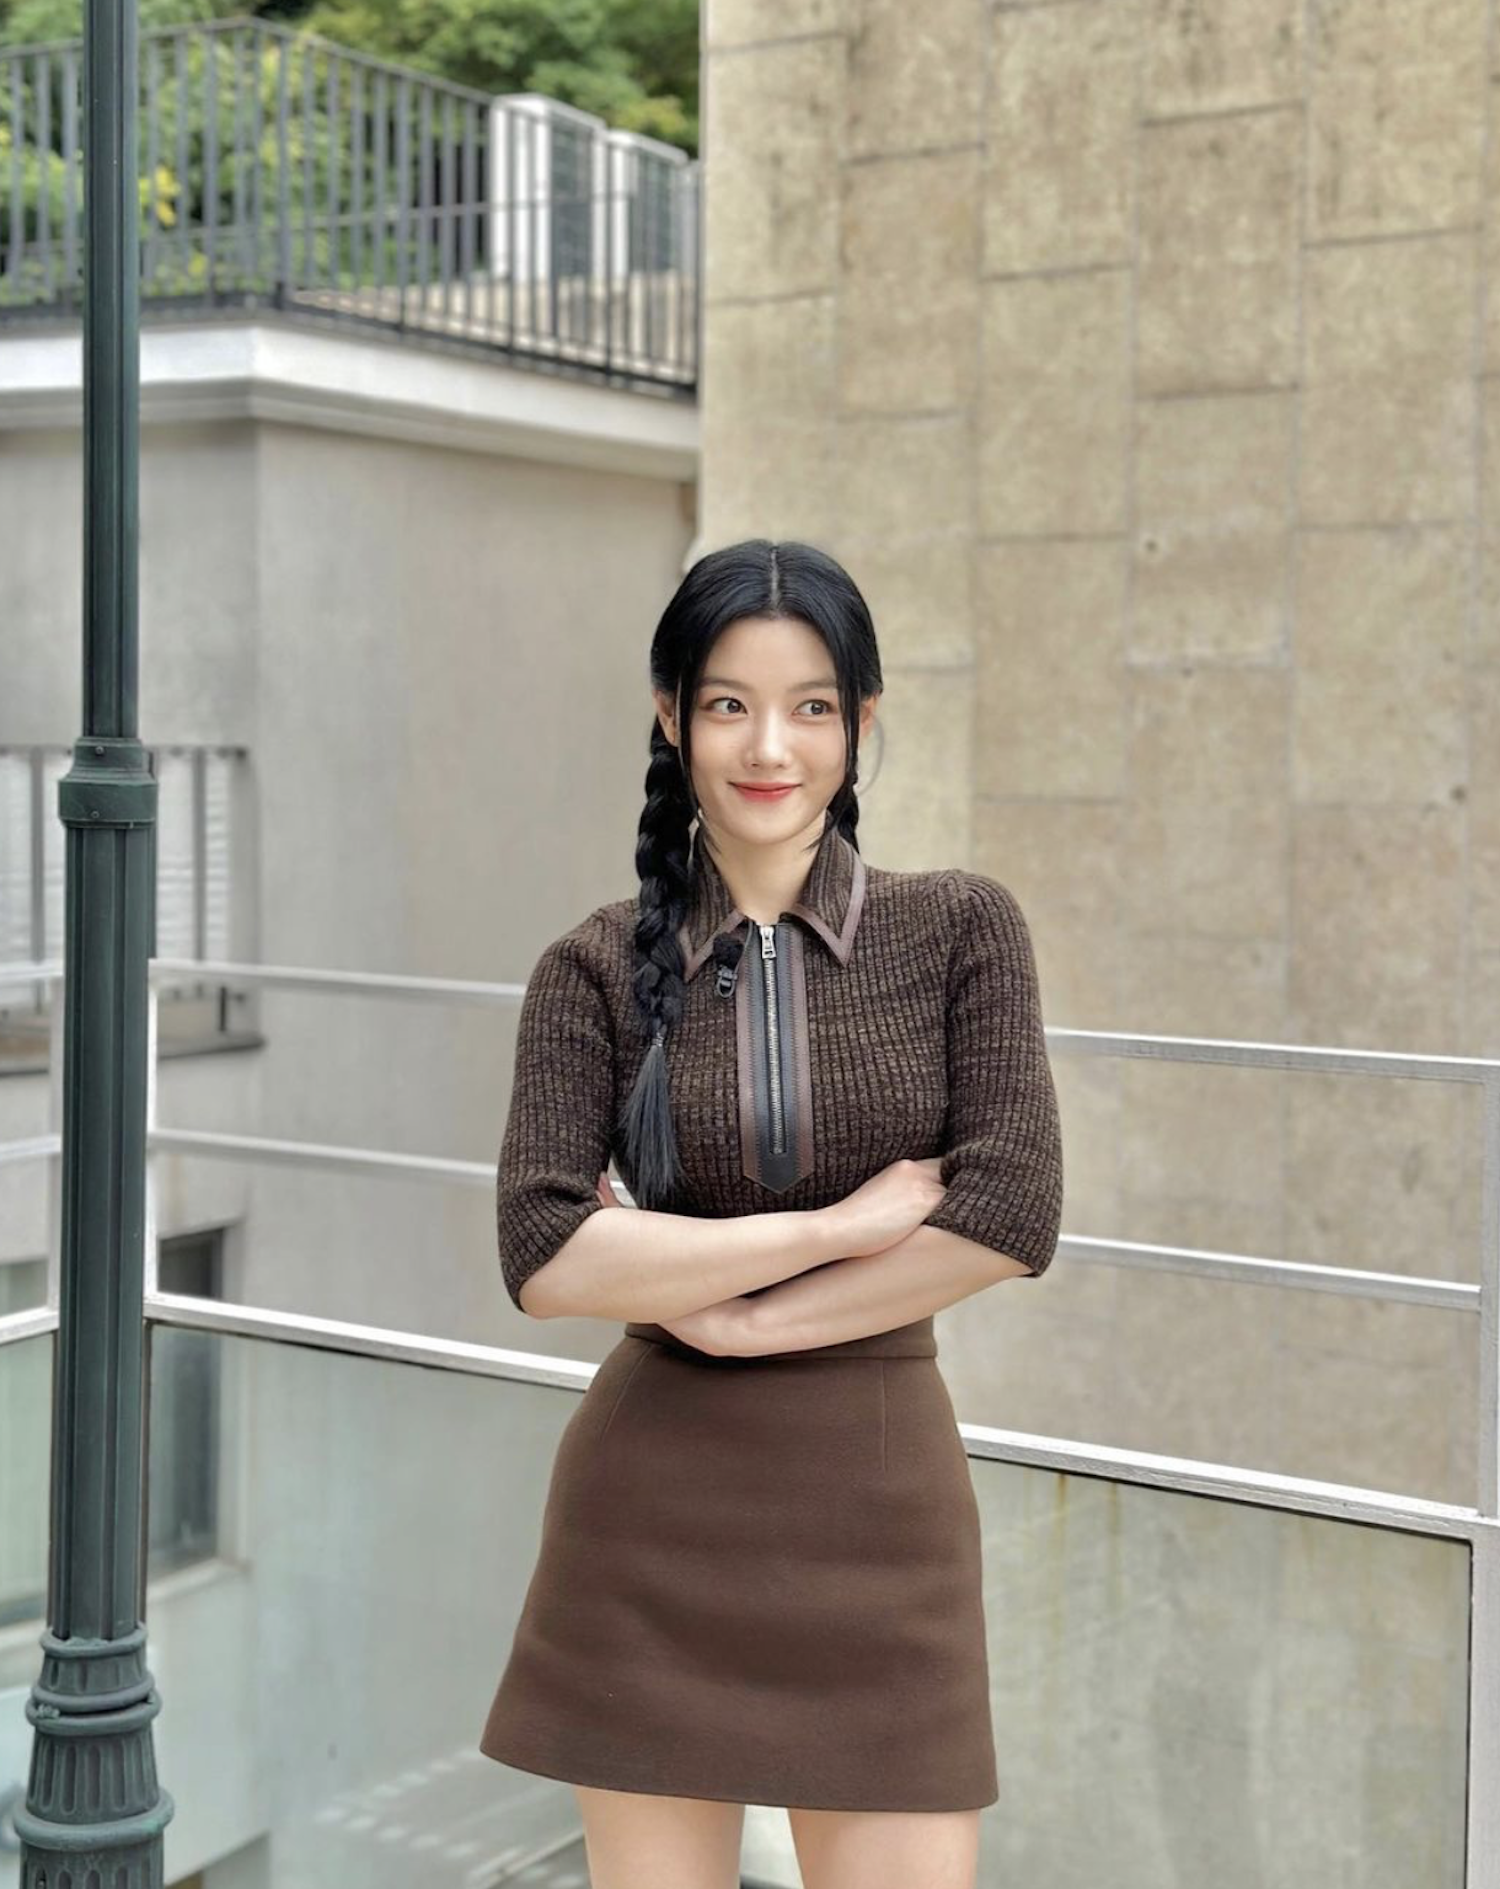 Sắc vóc quyến rũ của 'em gái quốc dân' Kim Yoo Jung ở tuổi 24 - Ảnh 11.